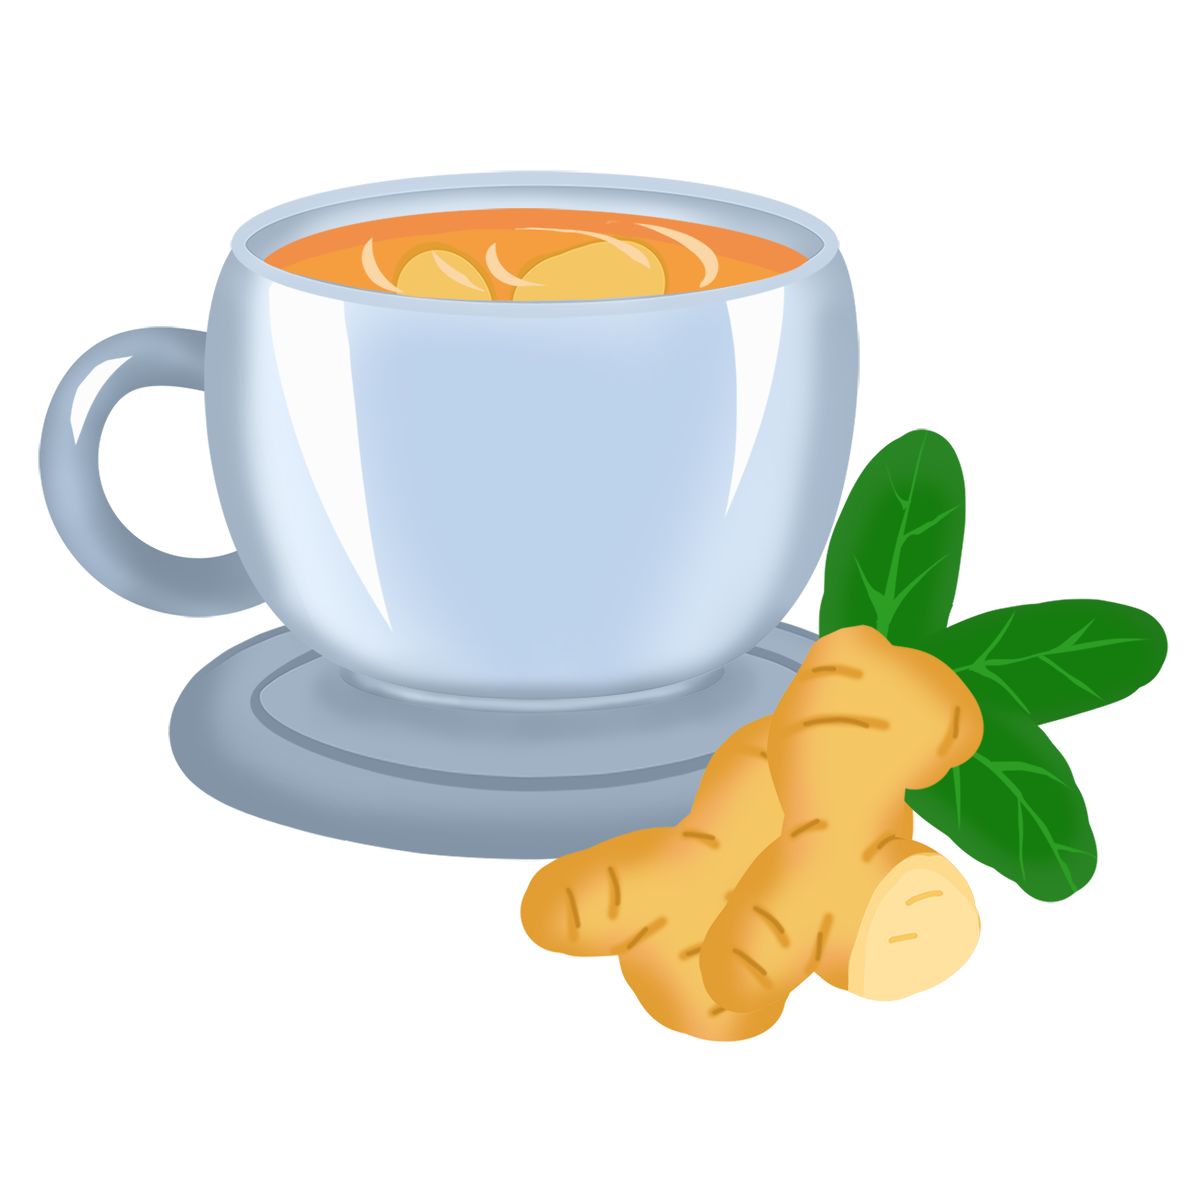 बुखार से राहत के लिए अदरक की चाय पीने के फायदे जानें